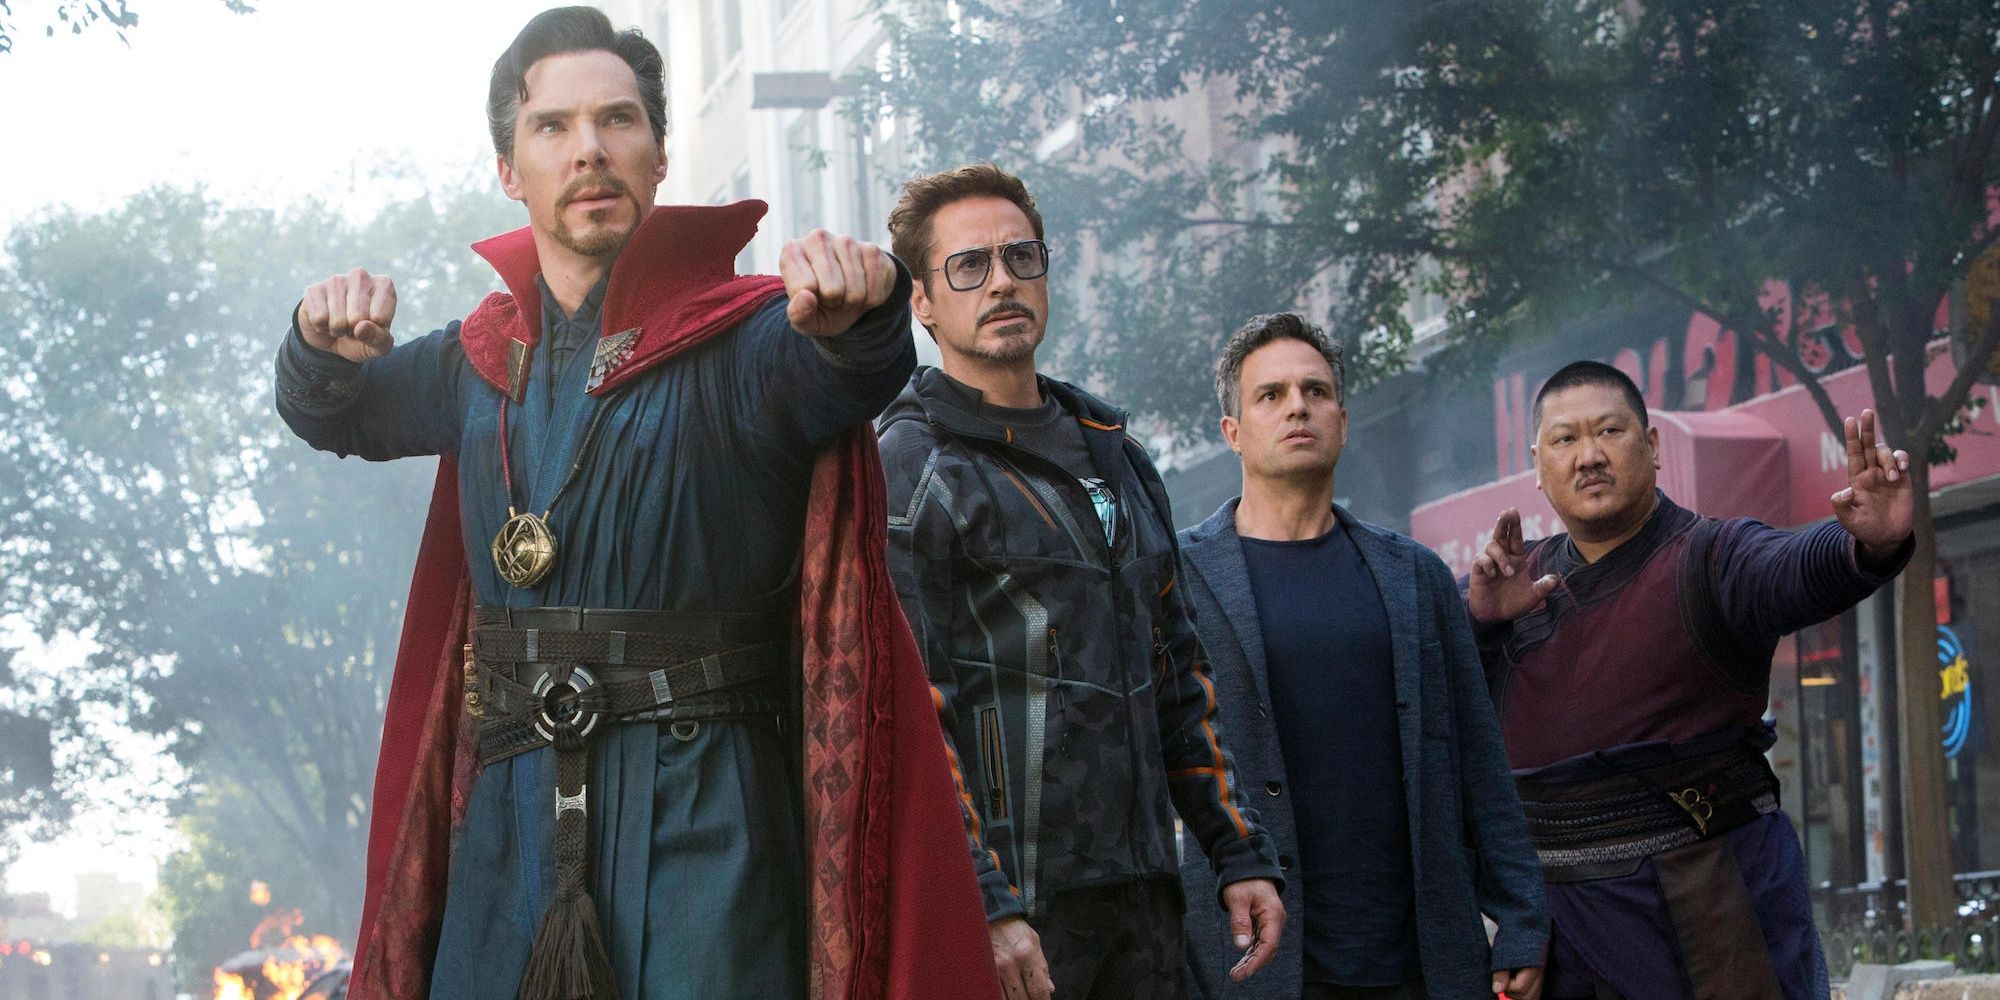 Stephen Strange, Tony Stark, Bruce Banner, and Wong on the street in Avengers: Infinity War